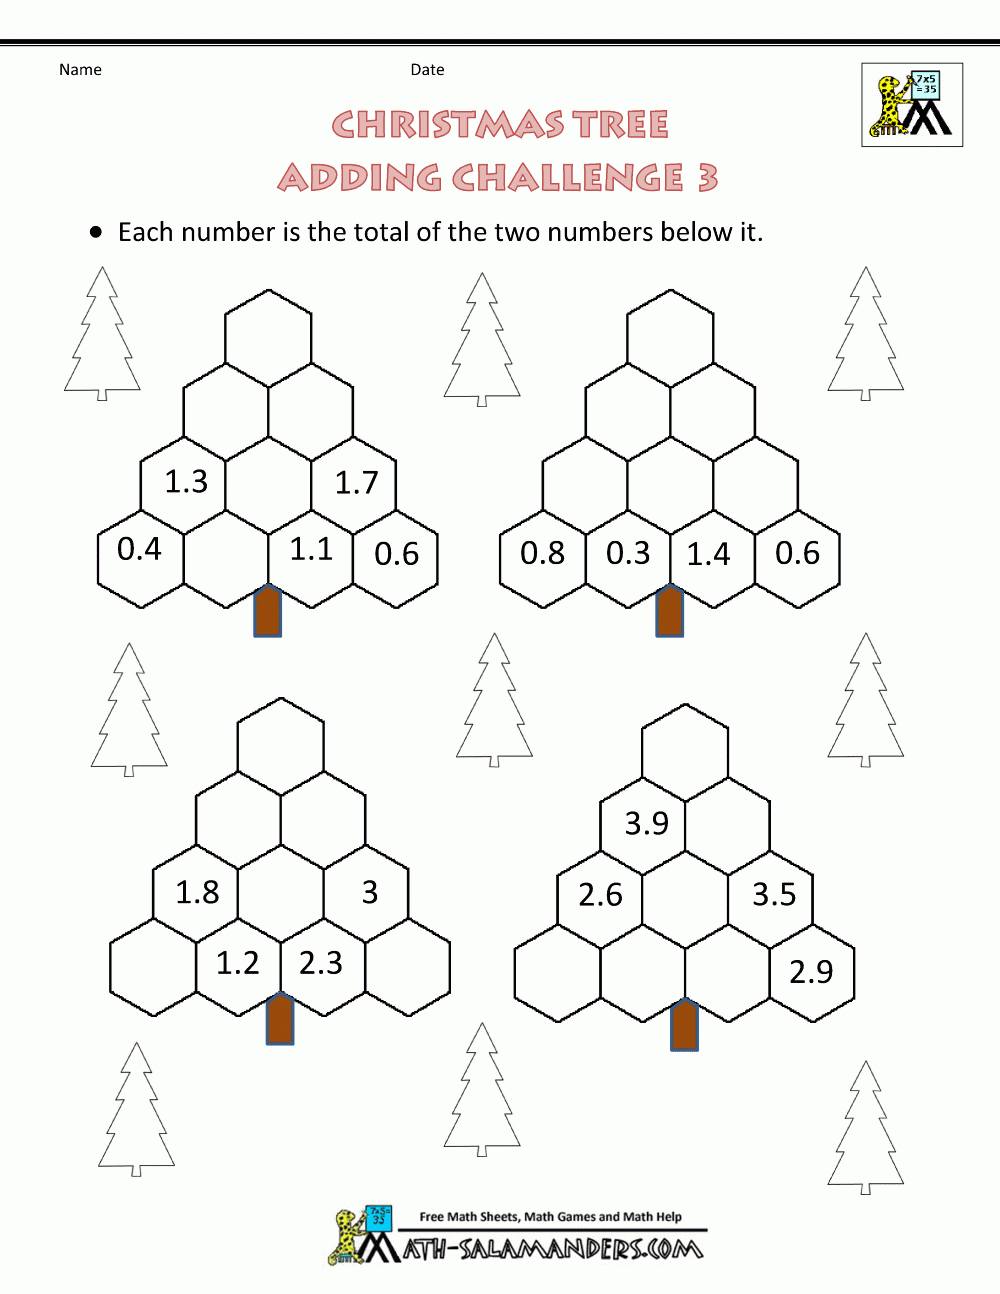 Christmas-Maths-Activities-Tree-Adding-Challenge-3.gif 1,000